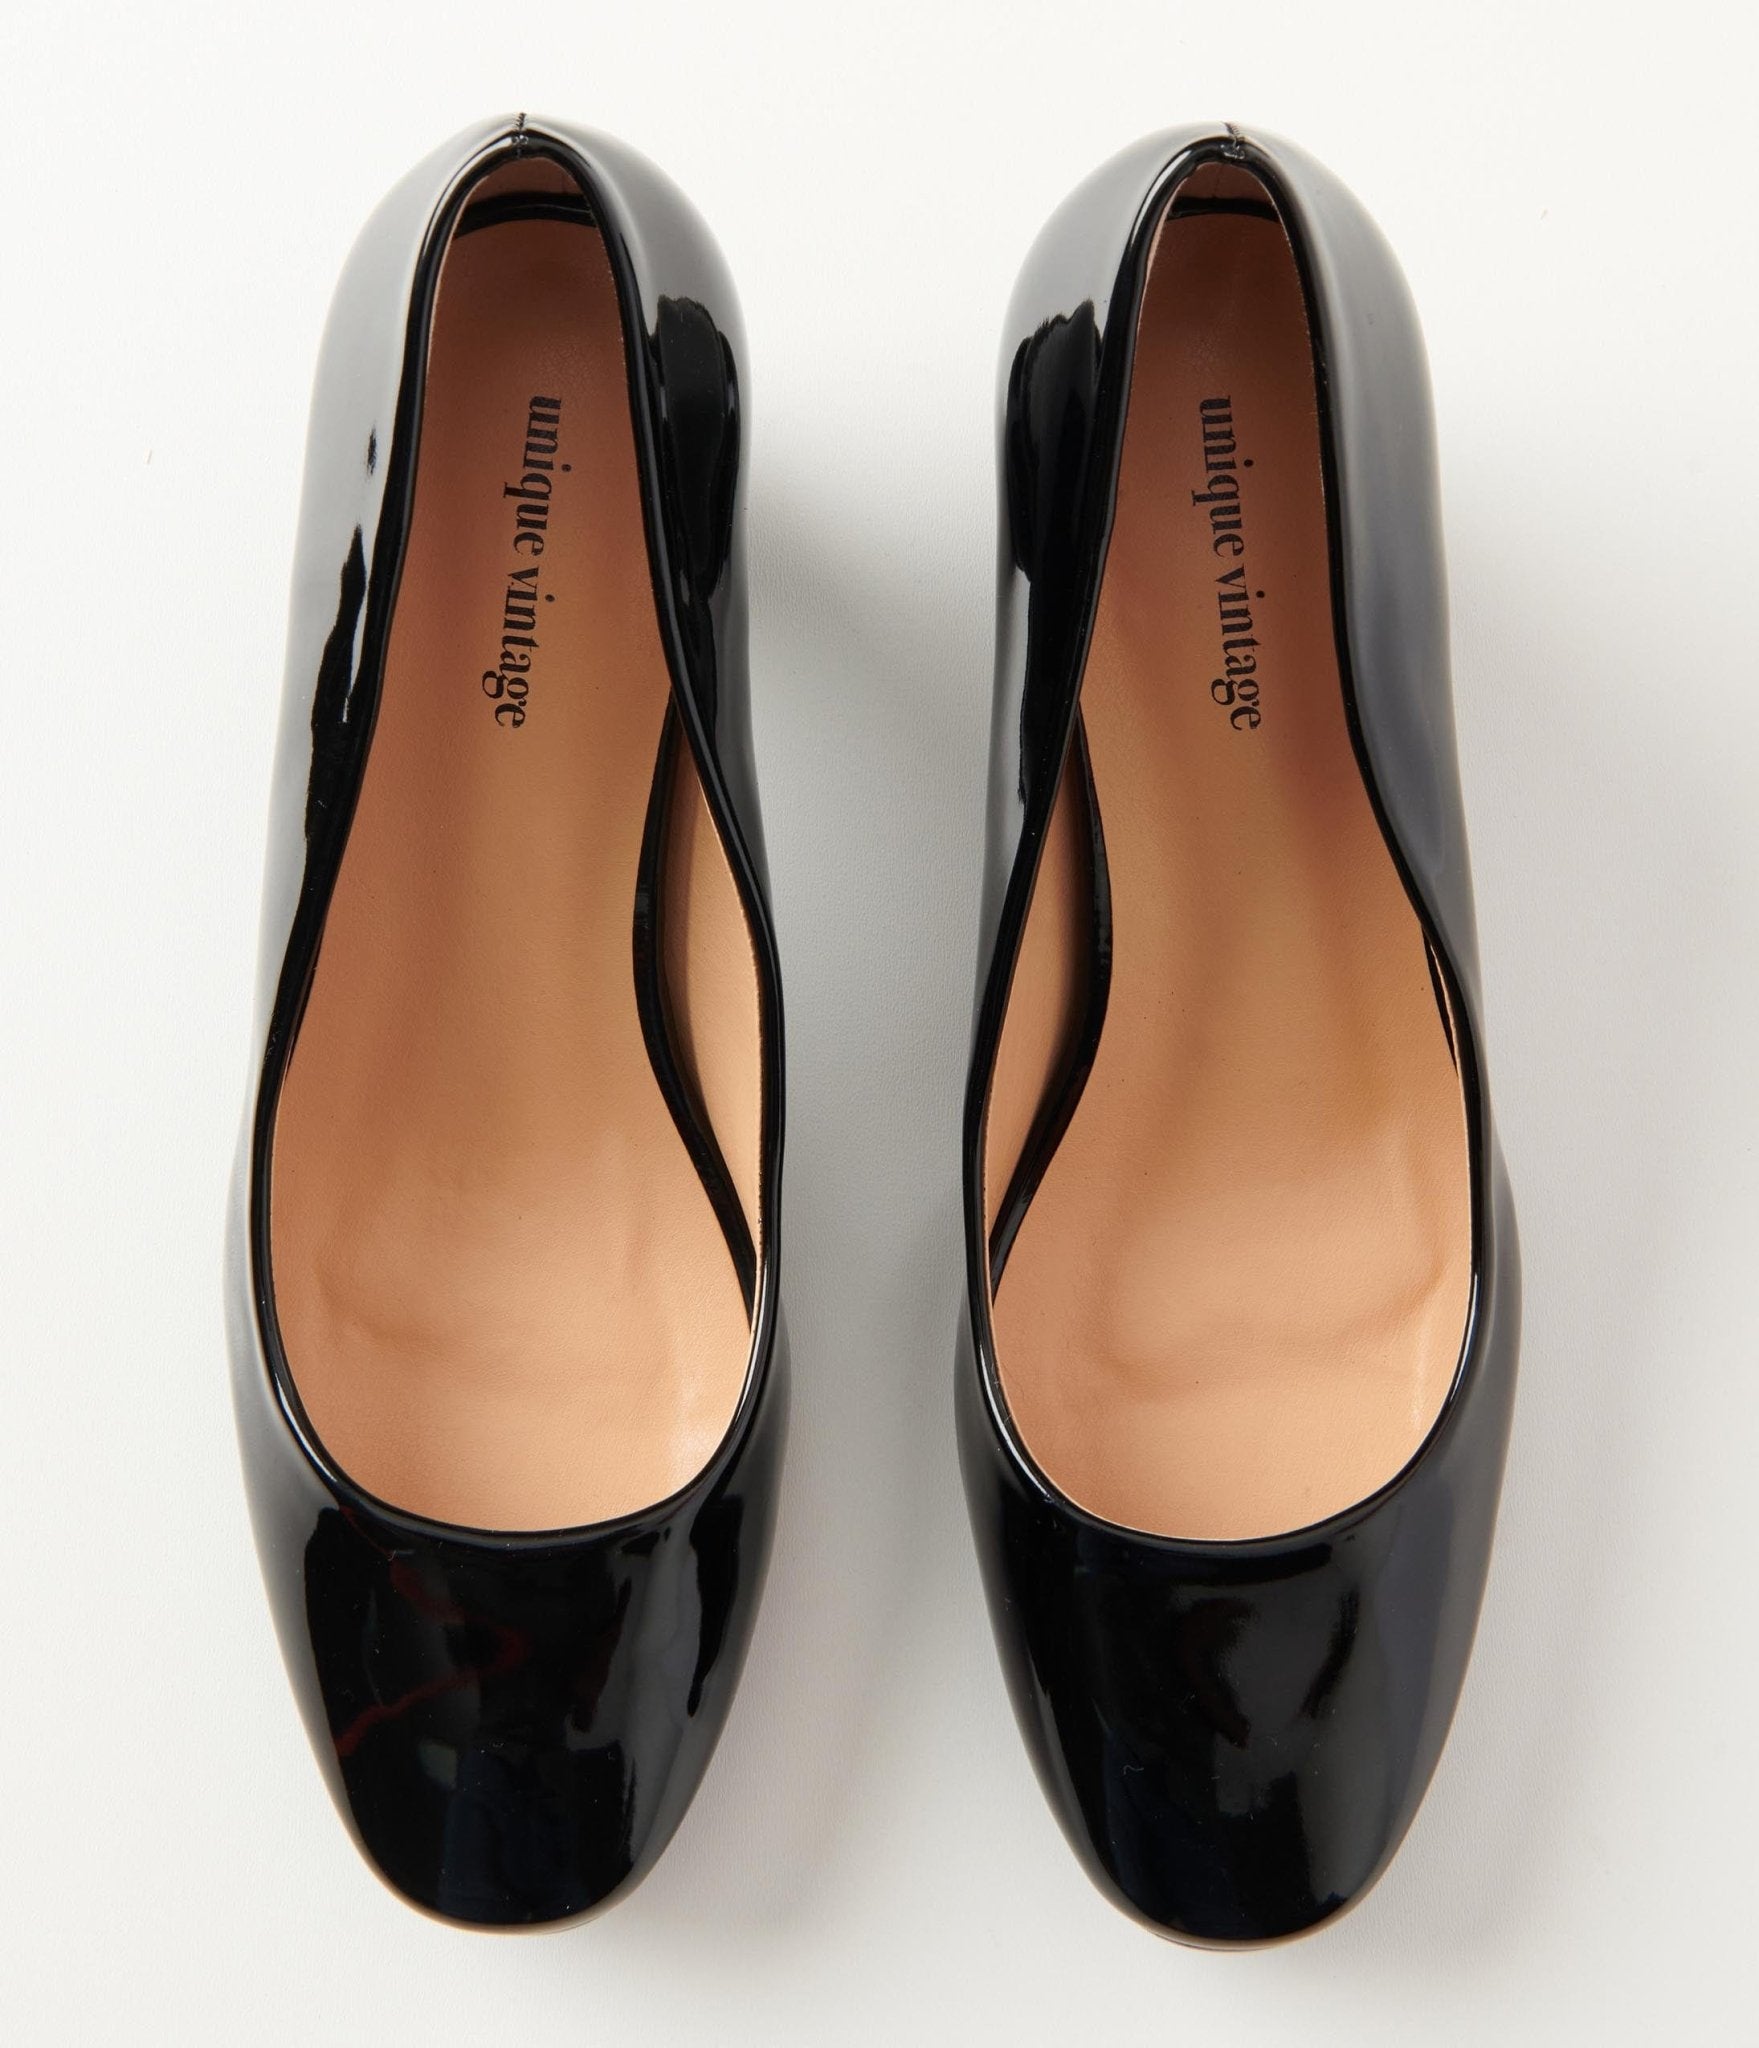 Black Pumps | Shop Black Patent Heels Online | Siren Shoes